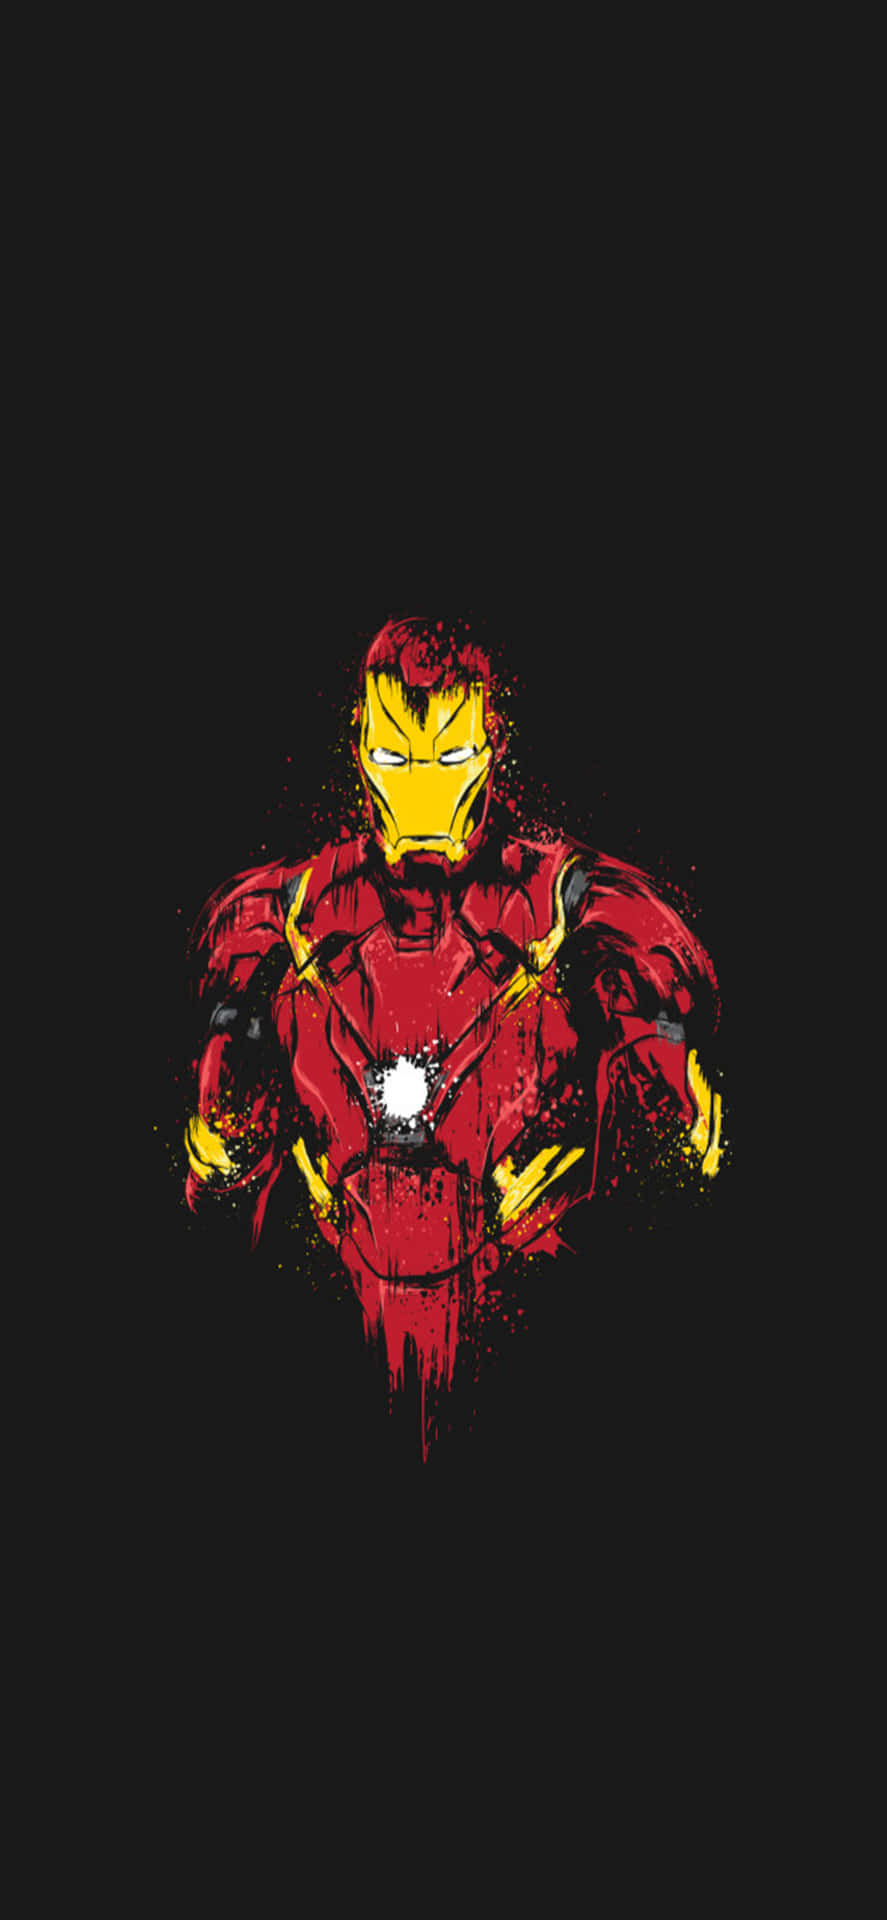 Iphonex Bakgrundsbild Med Iron Man, Iron Man Skadat Dräkt På Svart Bakgrund.